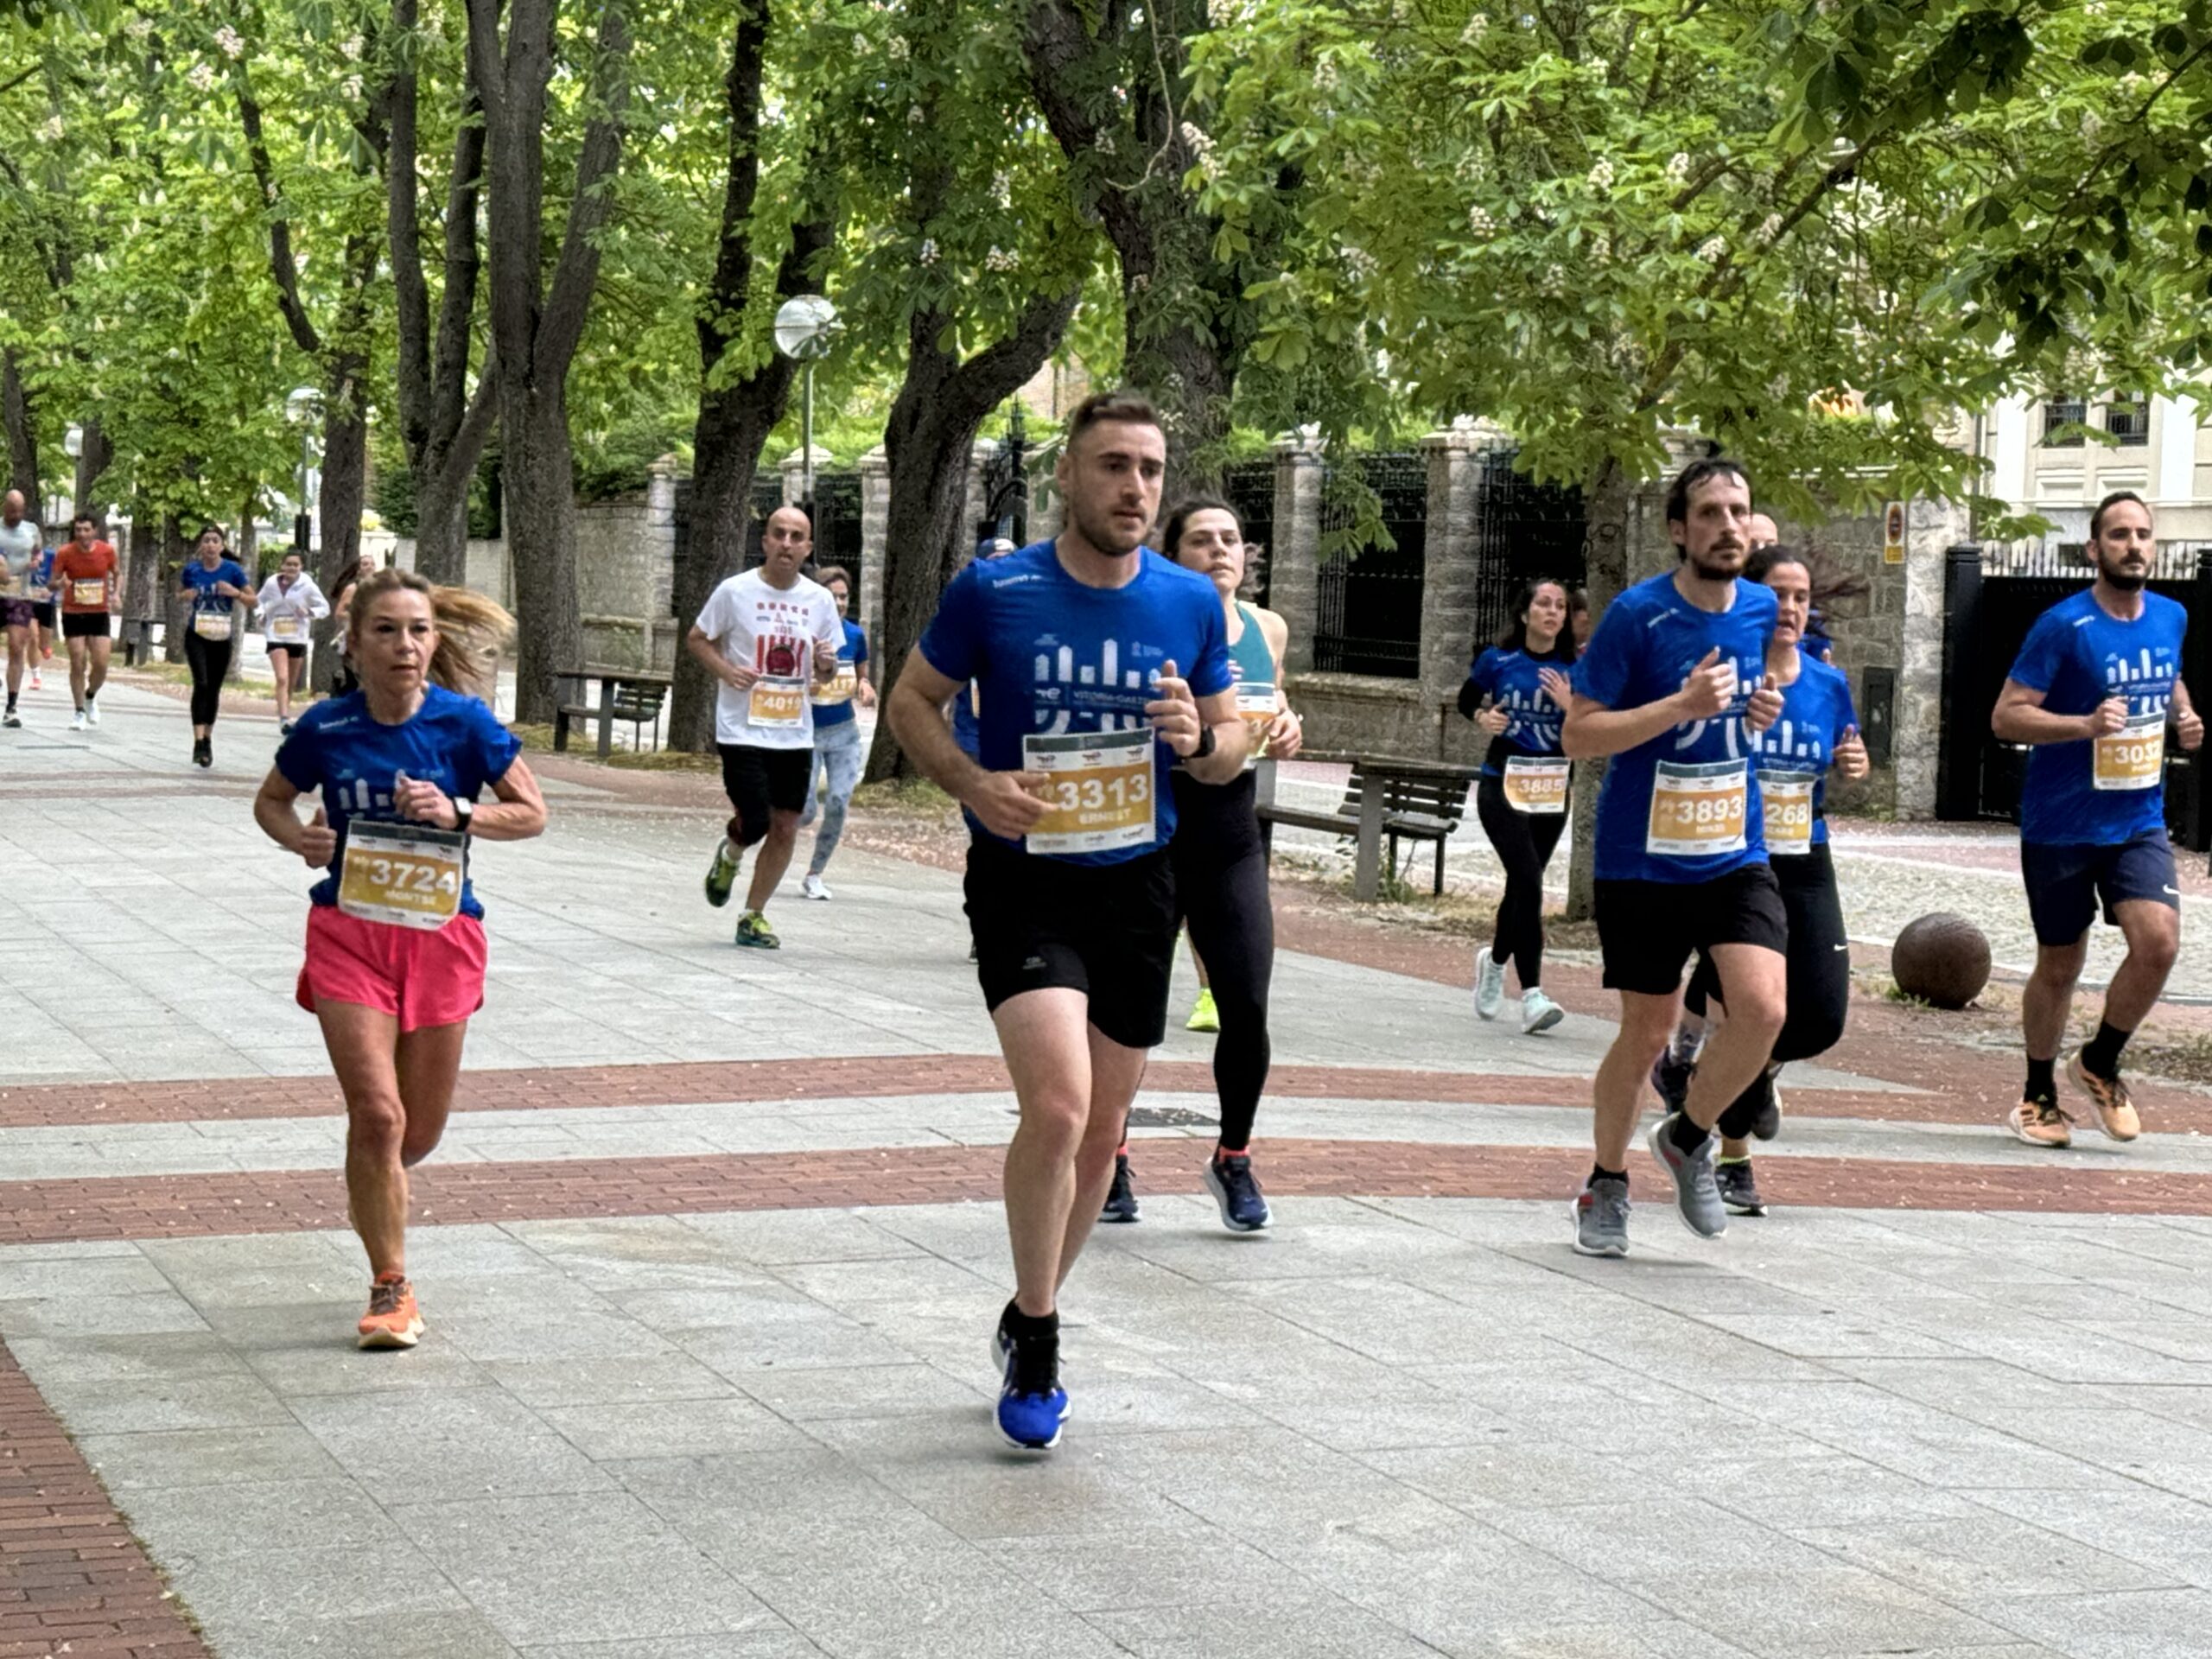 EN DIRECTO: La Maratón Martín Fiz recorre Vitoria este domingo